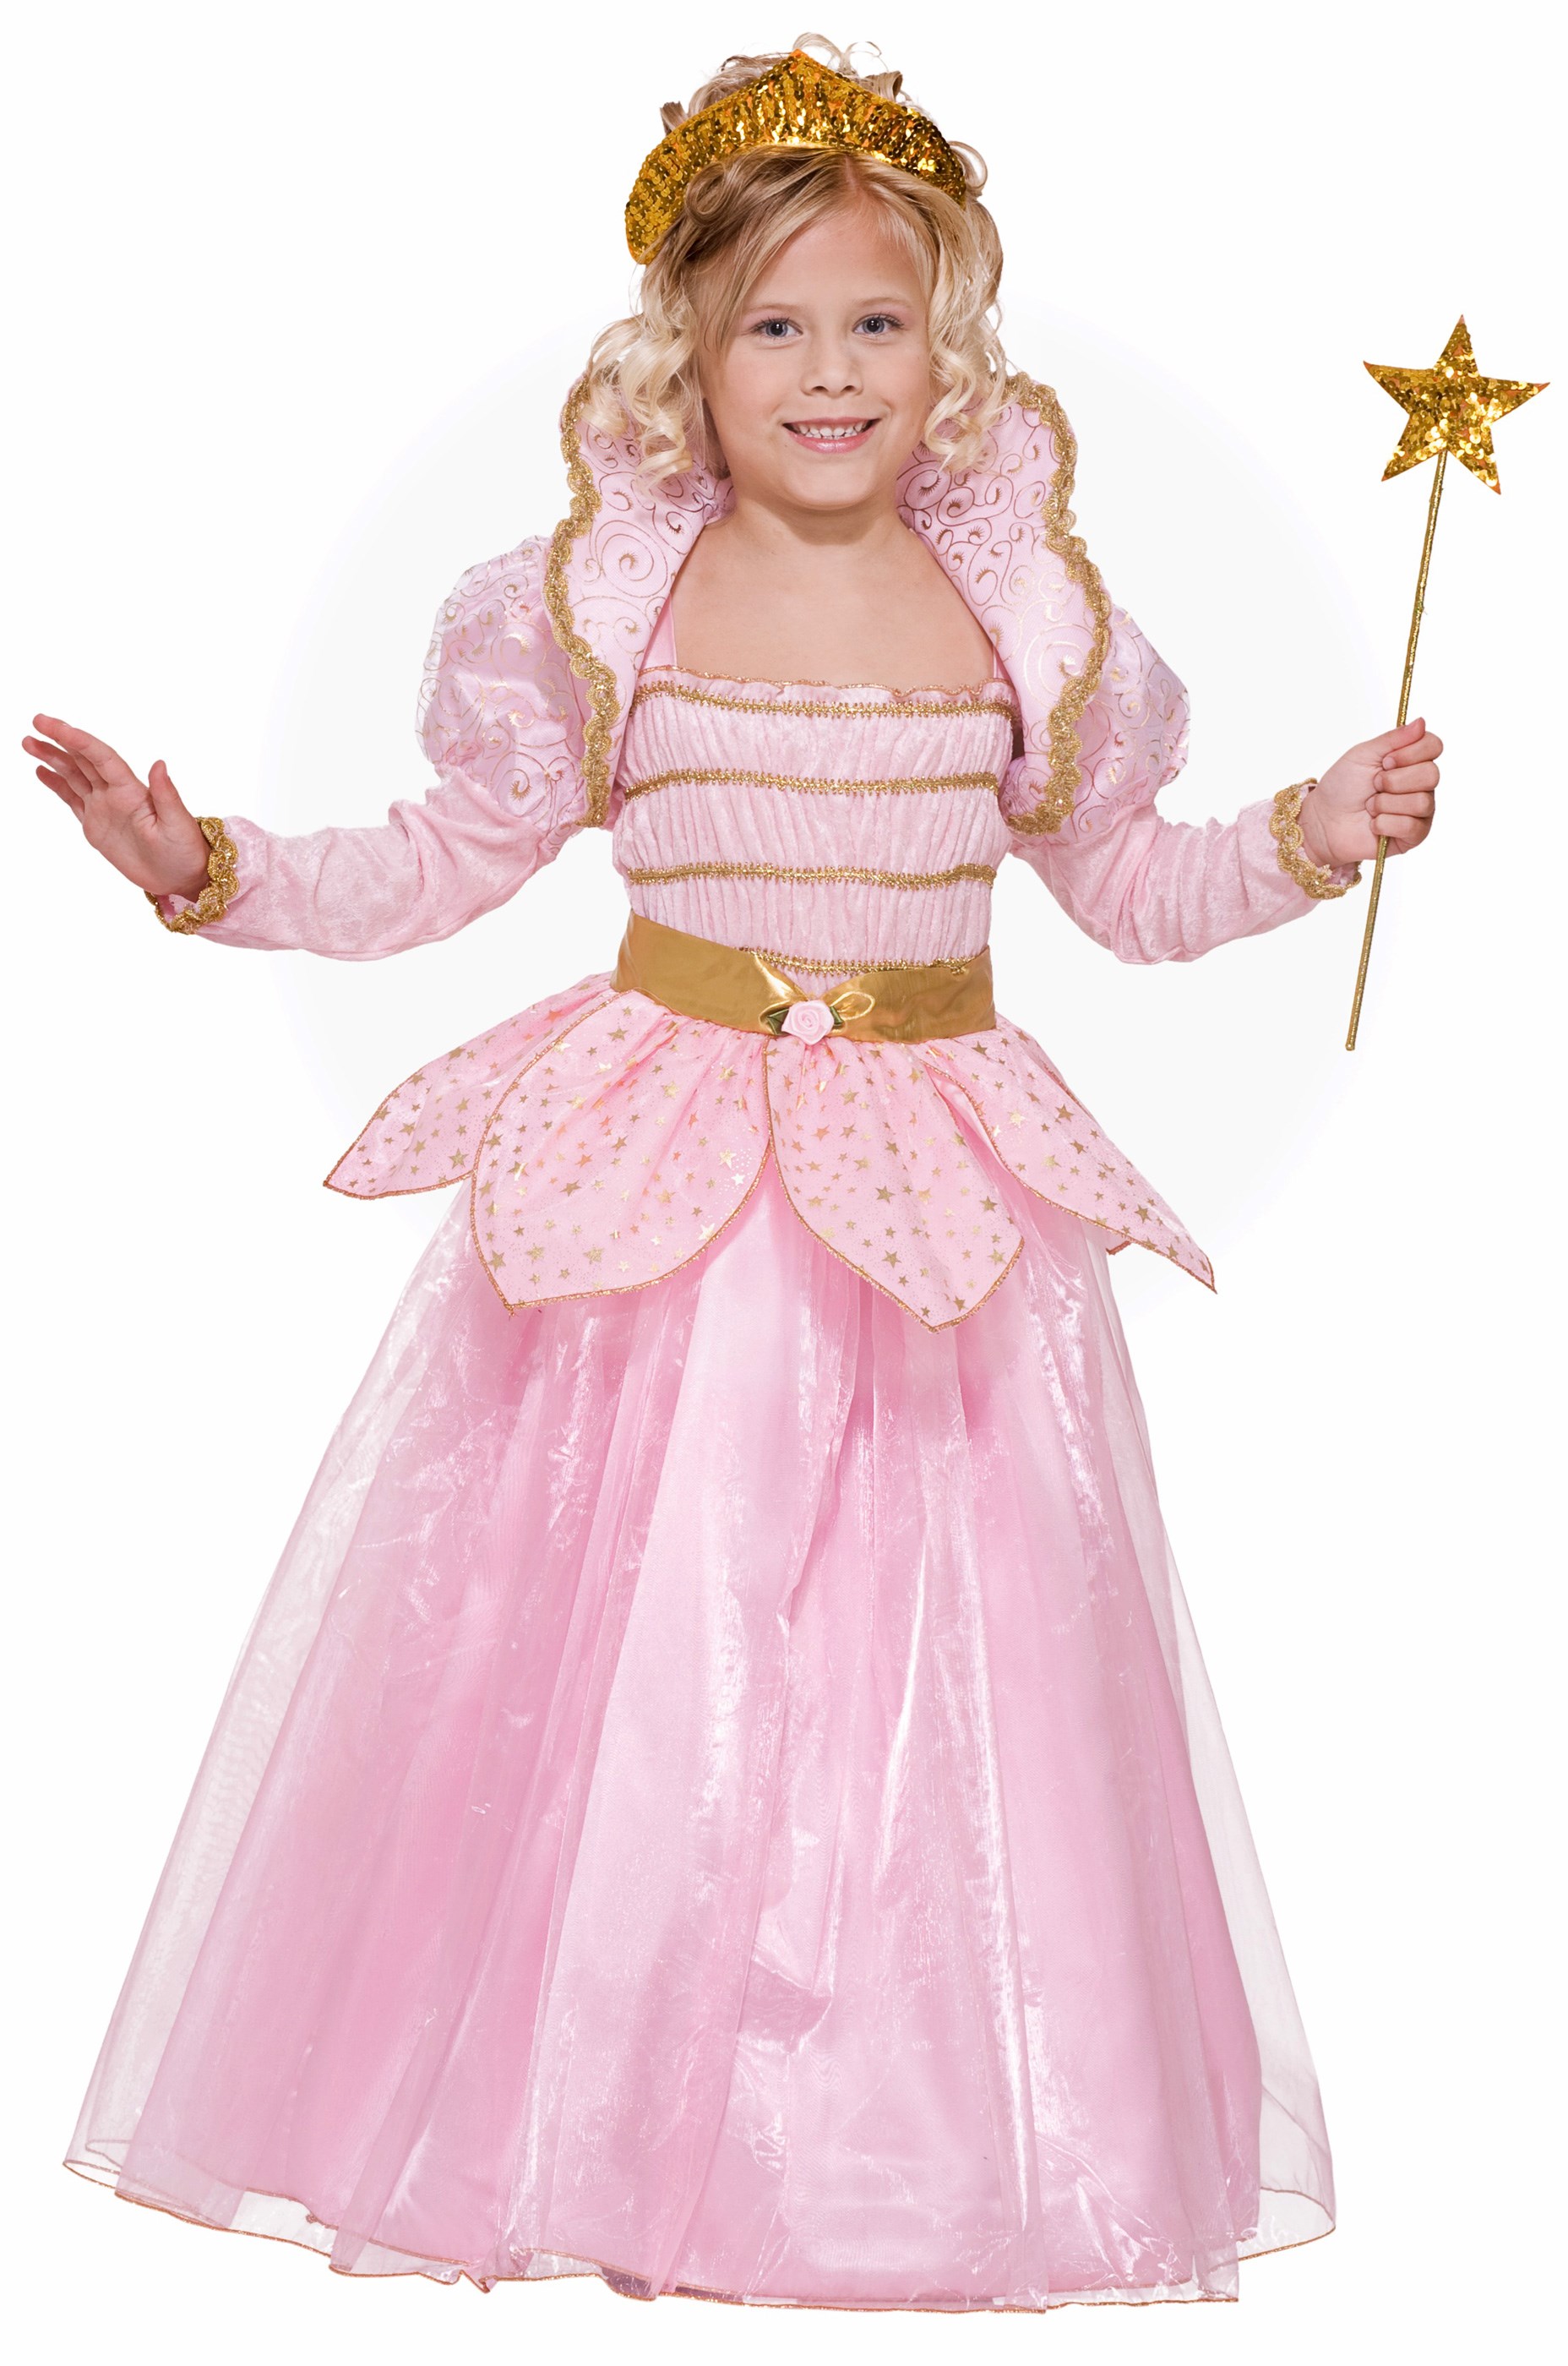 Purim Kids Costumes   Childrens Purim Costume   BuyCostumes 